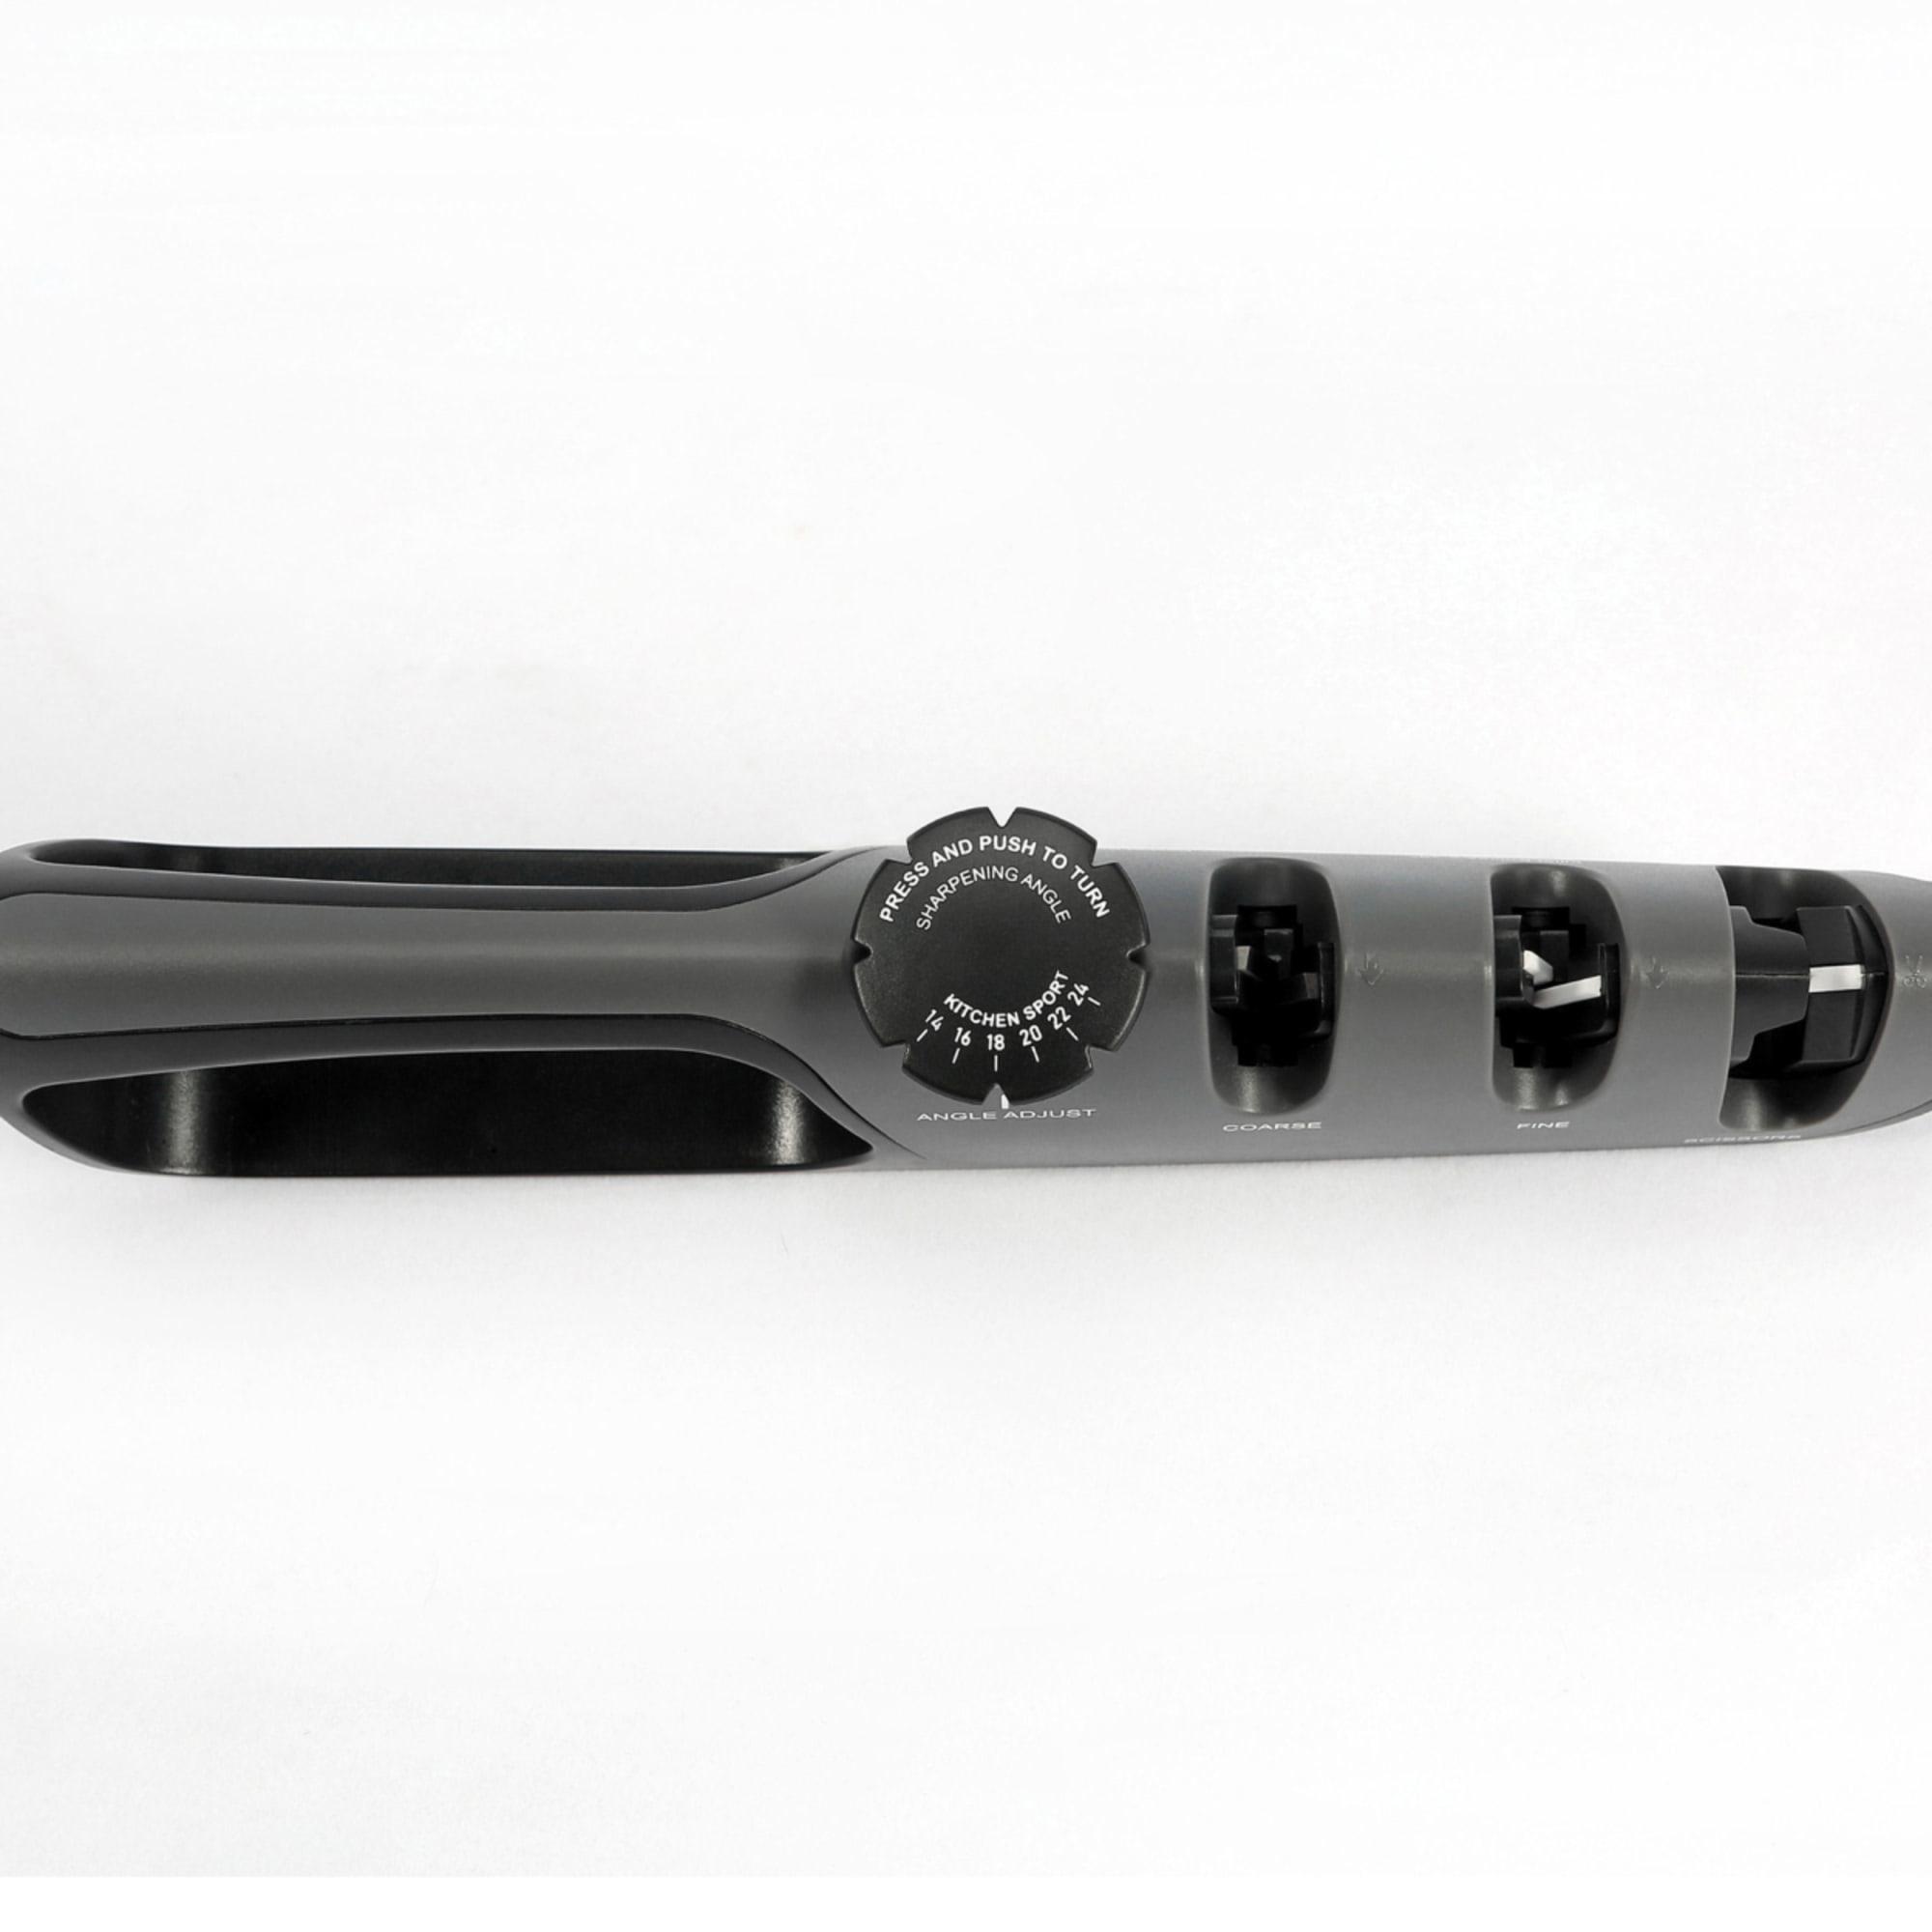 Shervin Verkil Acuminate Adjustable Knife Sharpener Image 5